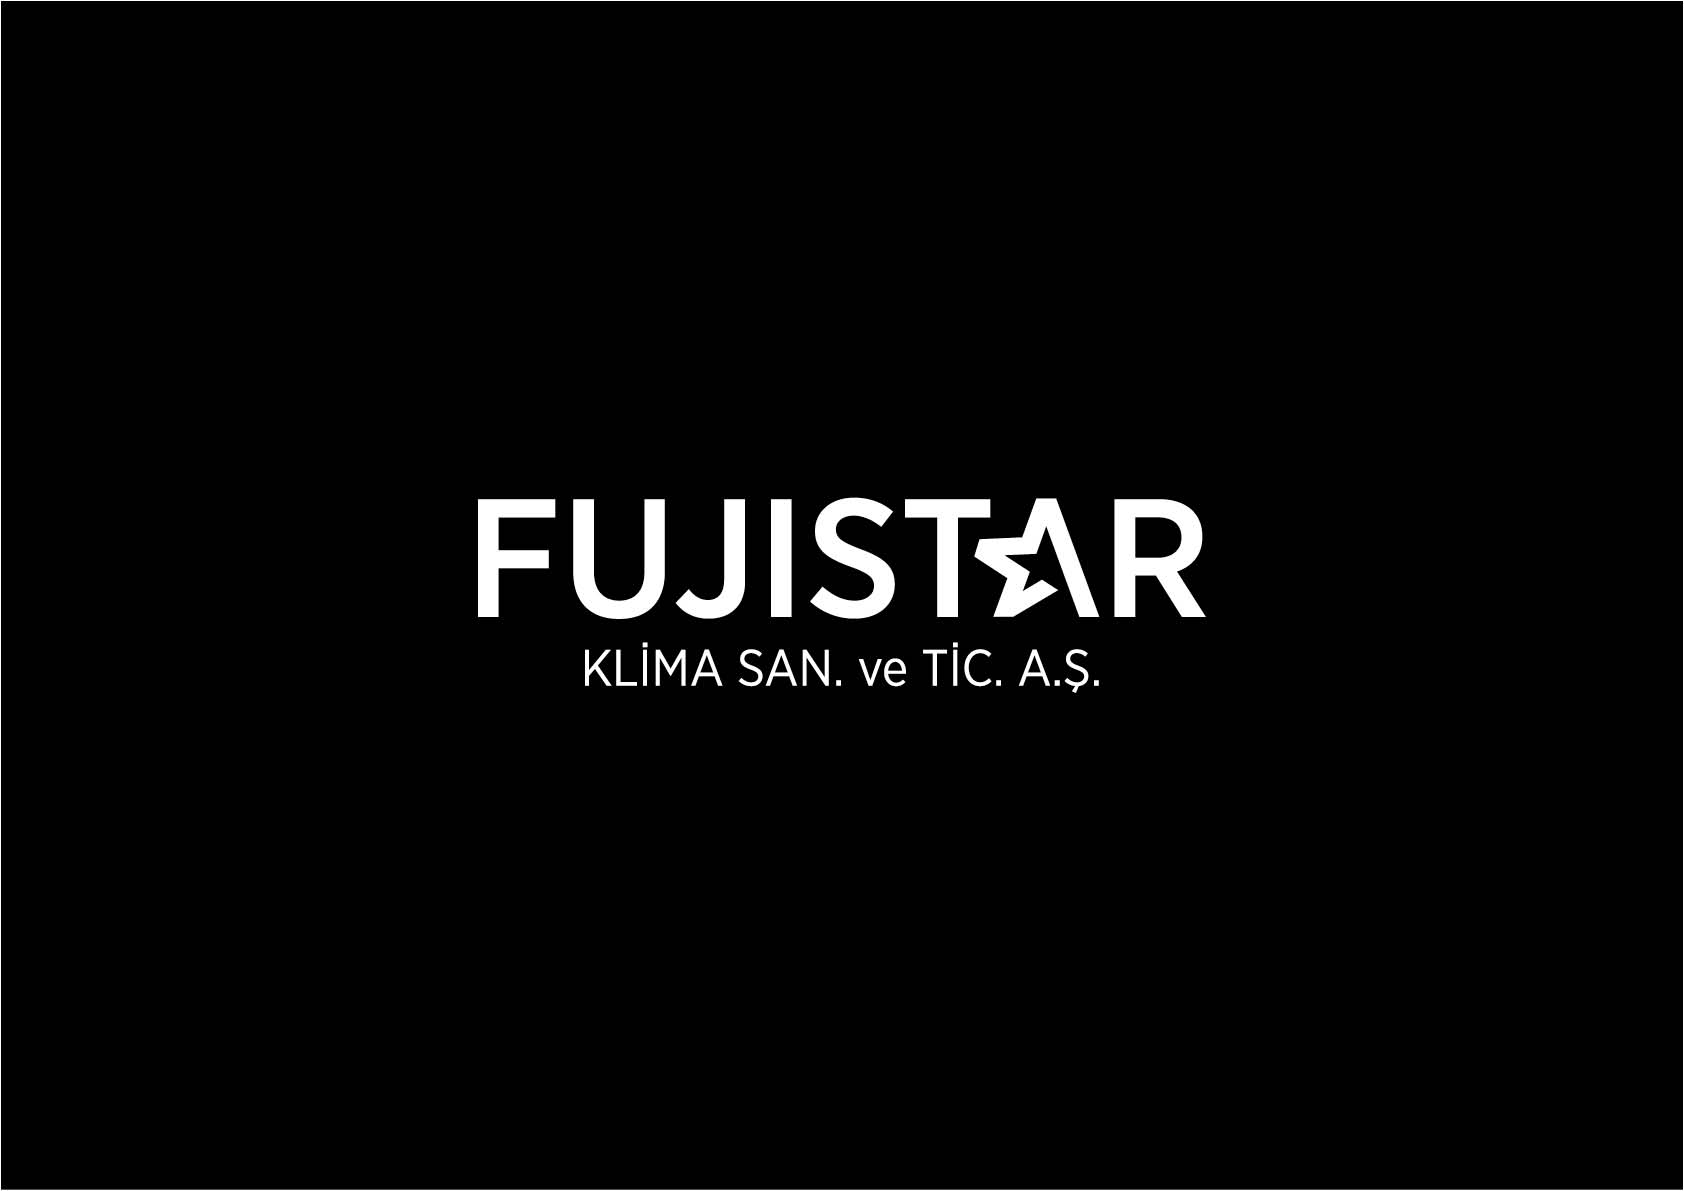 FujiStar_Kurumsal5